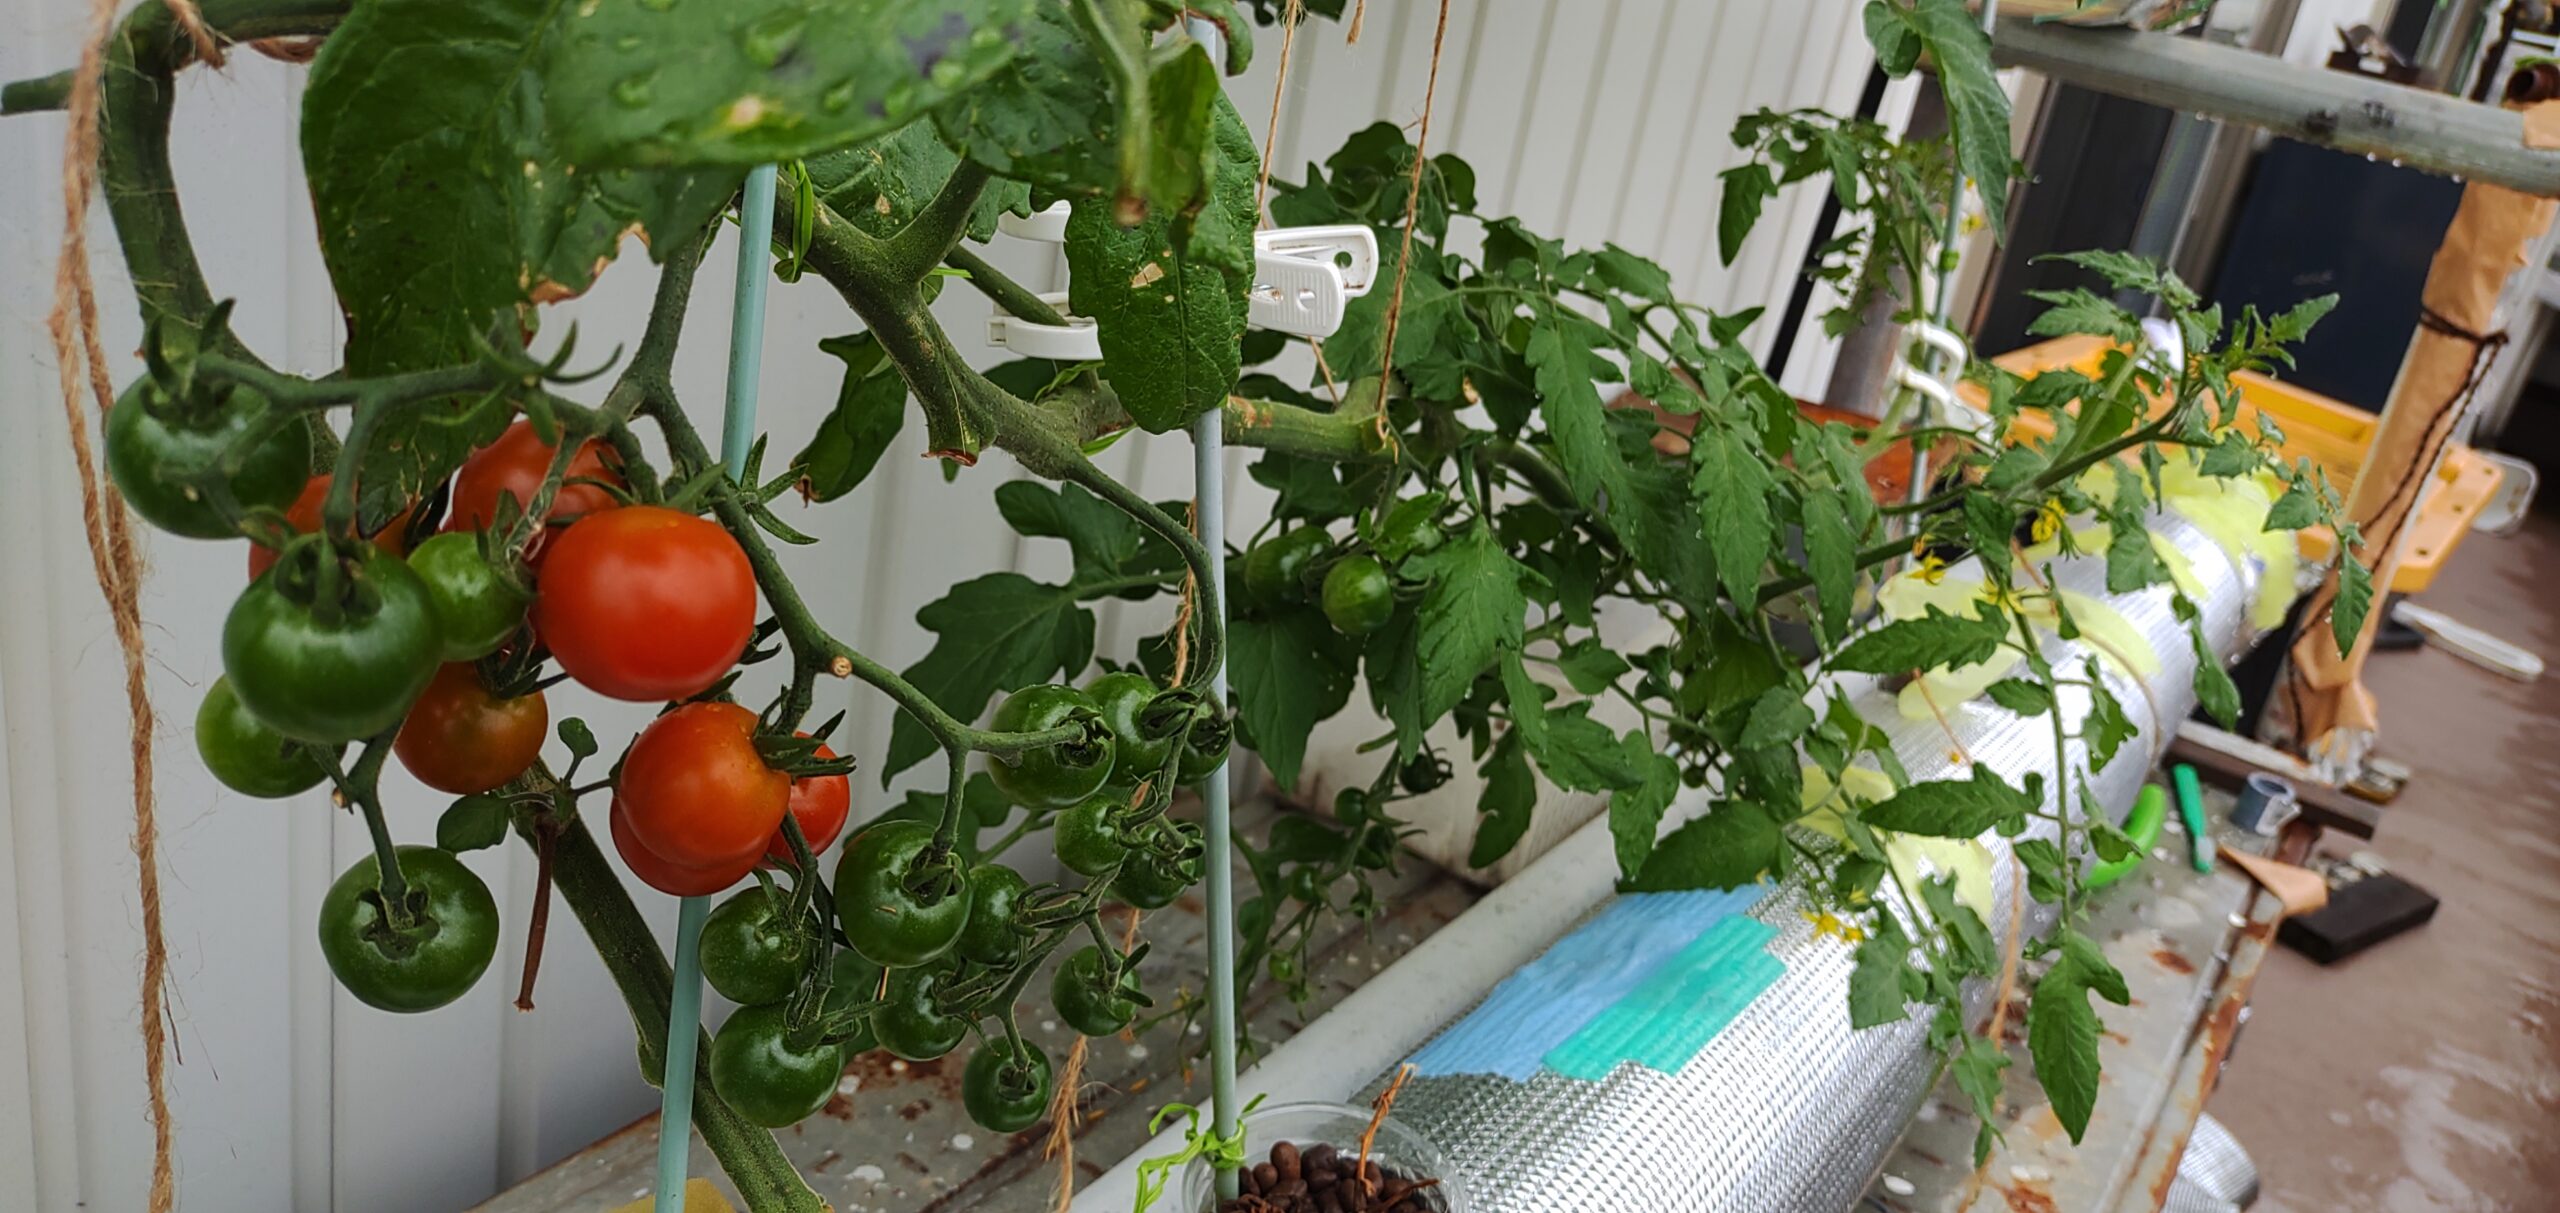 ベランダででミニトマトの水耕栽培 できるだけ簡単にやりたいと思っている僕のやり方 わがやのはなしブログ